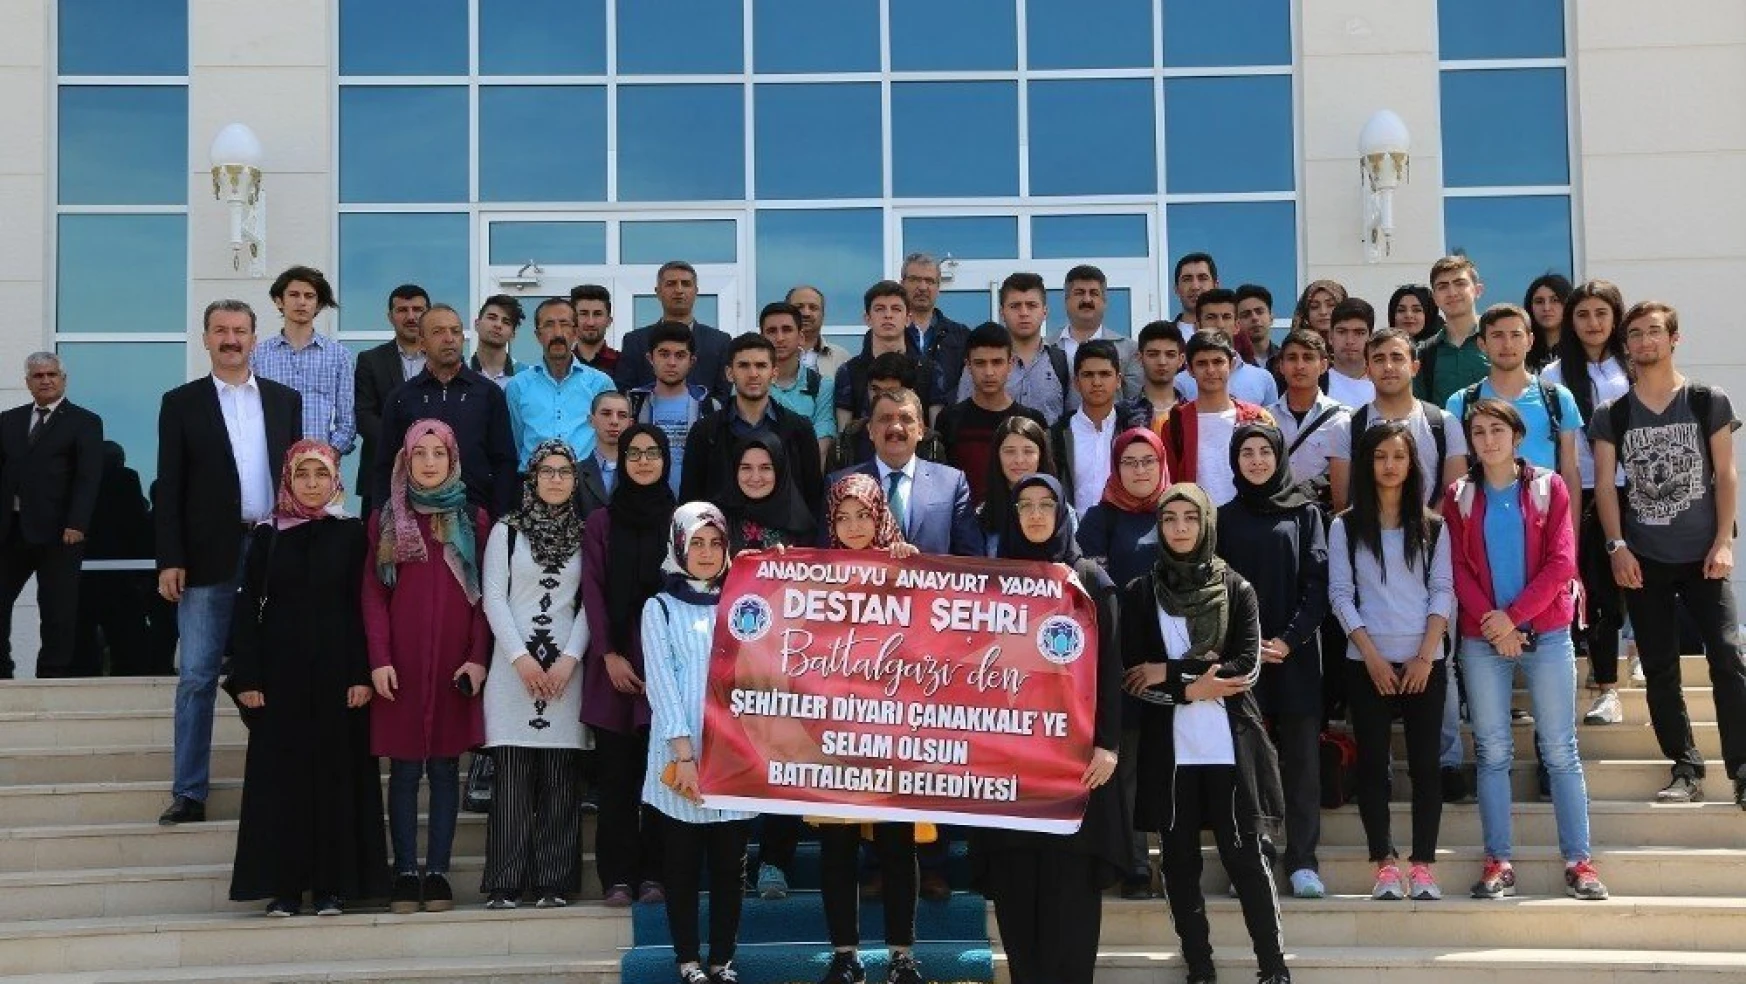 Battalgazi Belediyesi başarılı öğrencileri Çanakkale'ye gönderdi
